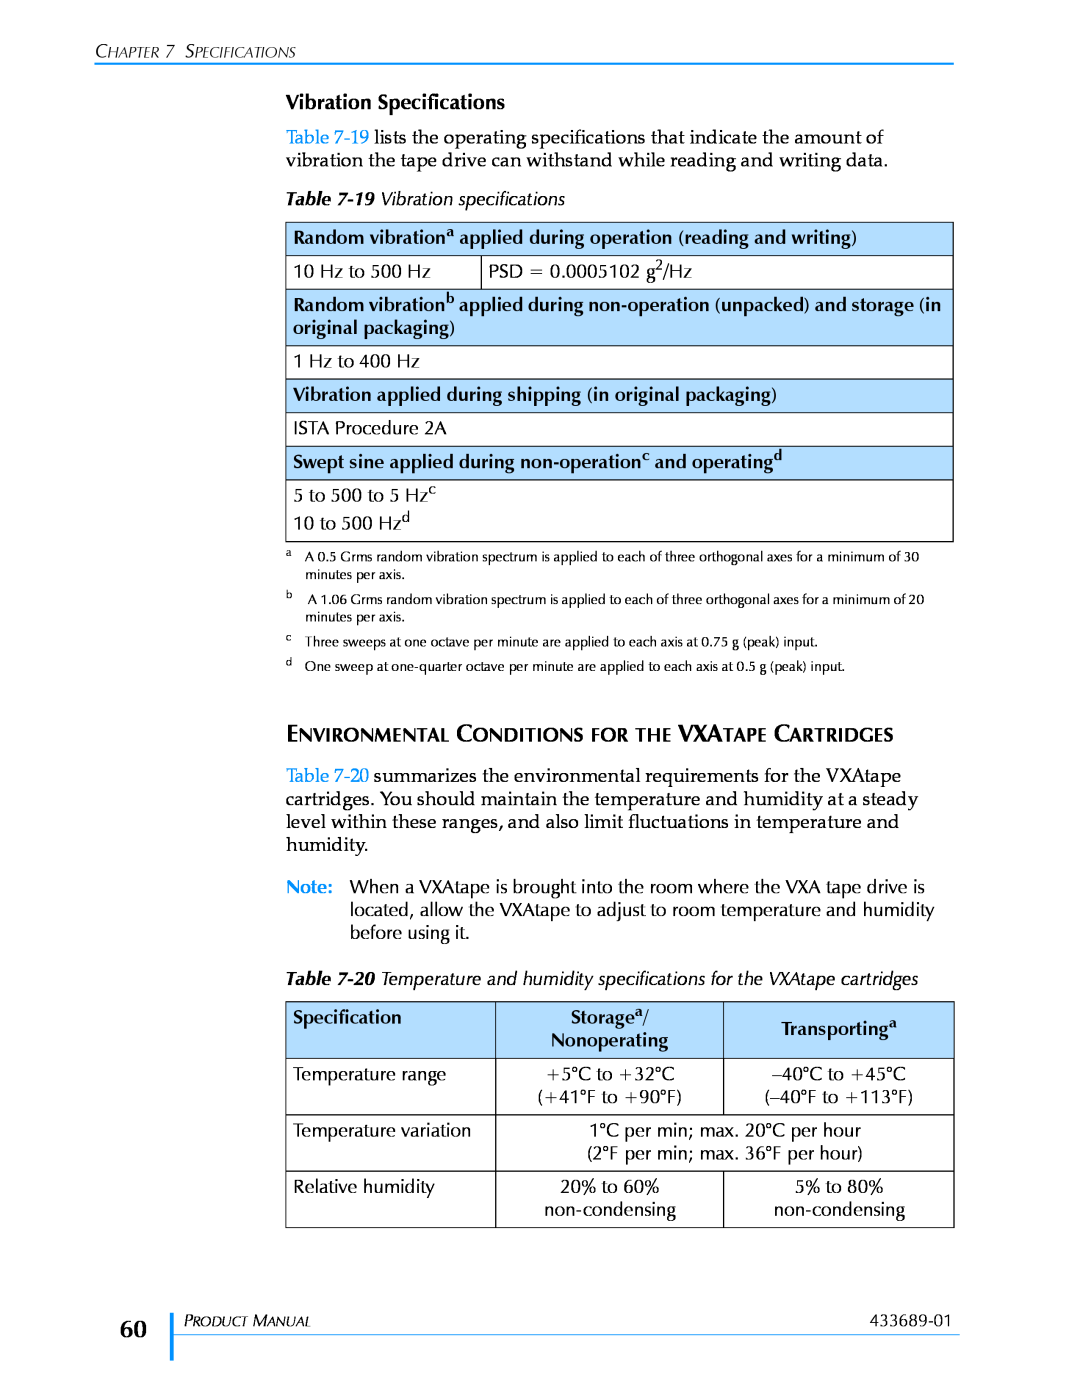 Tandberg Data VXA-320 (VXA-3) manual Vibration Specifications 